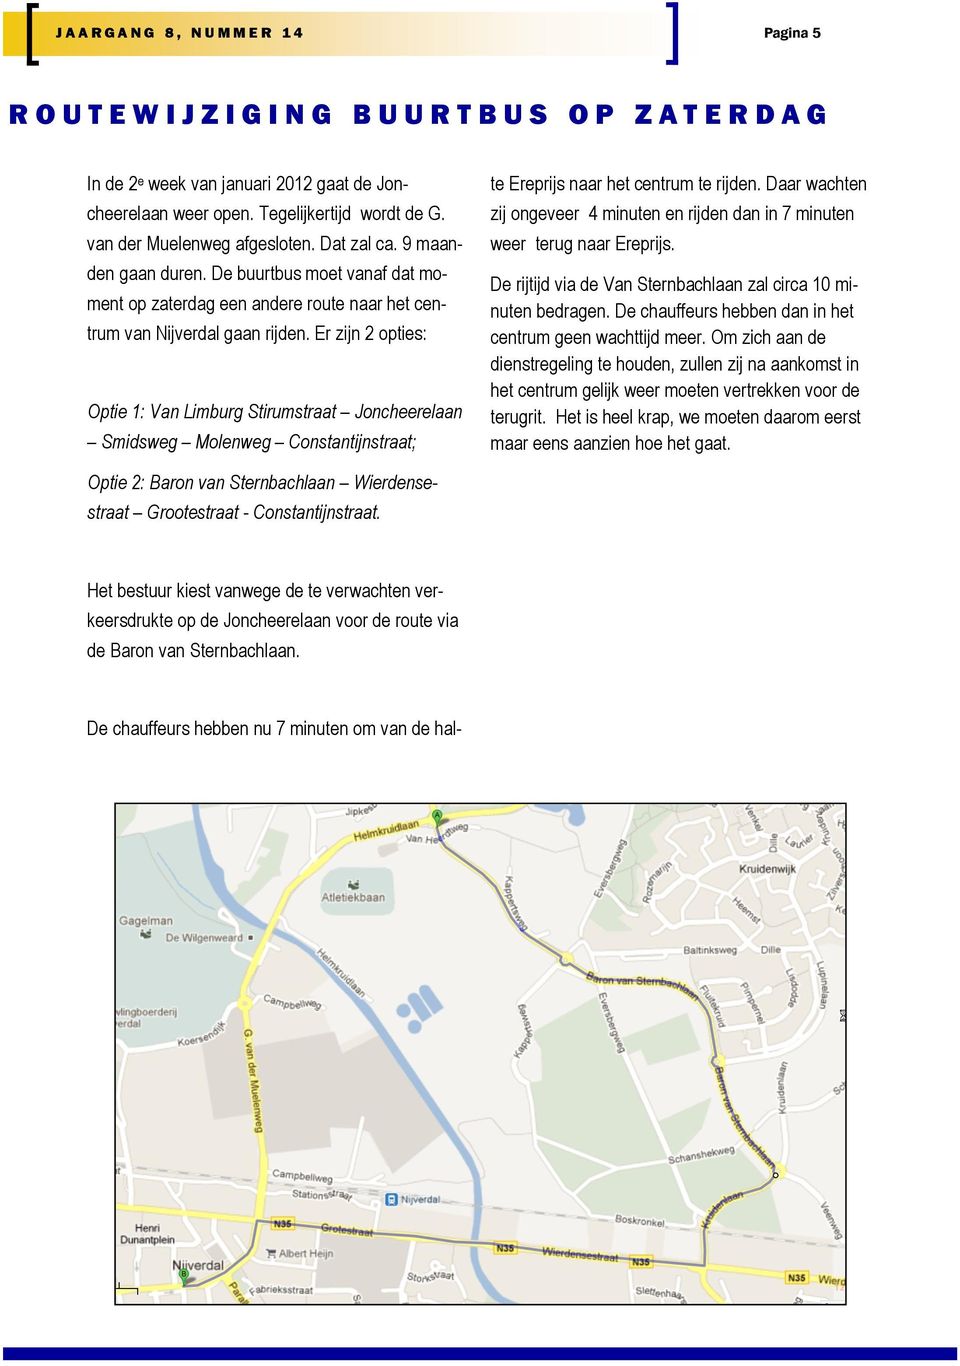 Er zijn 2 opties: Optie 1: Van Limburg Stirumstraat Joncheerelaan Smidsweg Molenweg Constantijnstraat; De chauffeurs hebben nu 7 minuten om van de halte Ereprijs naar het centrum te rijden.